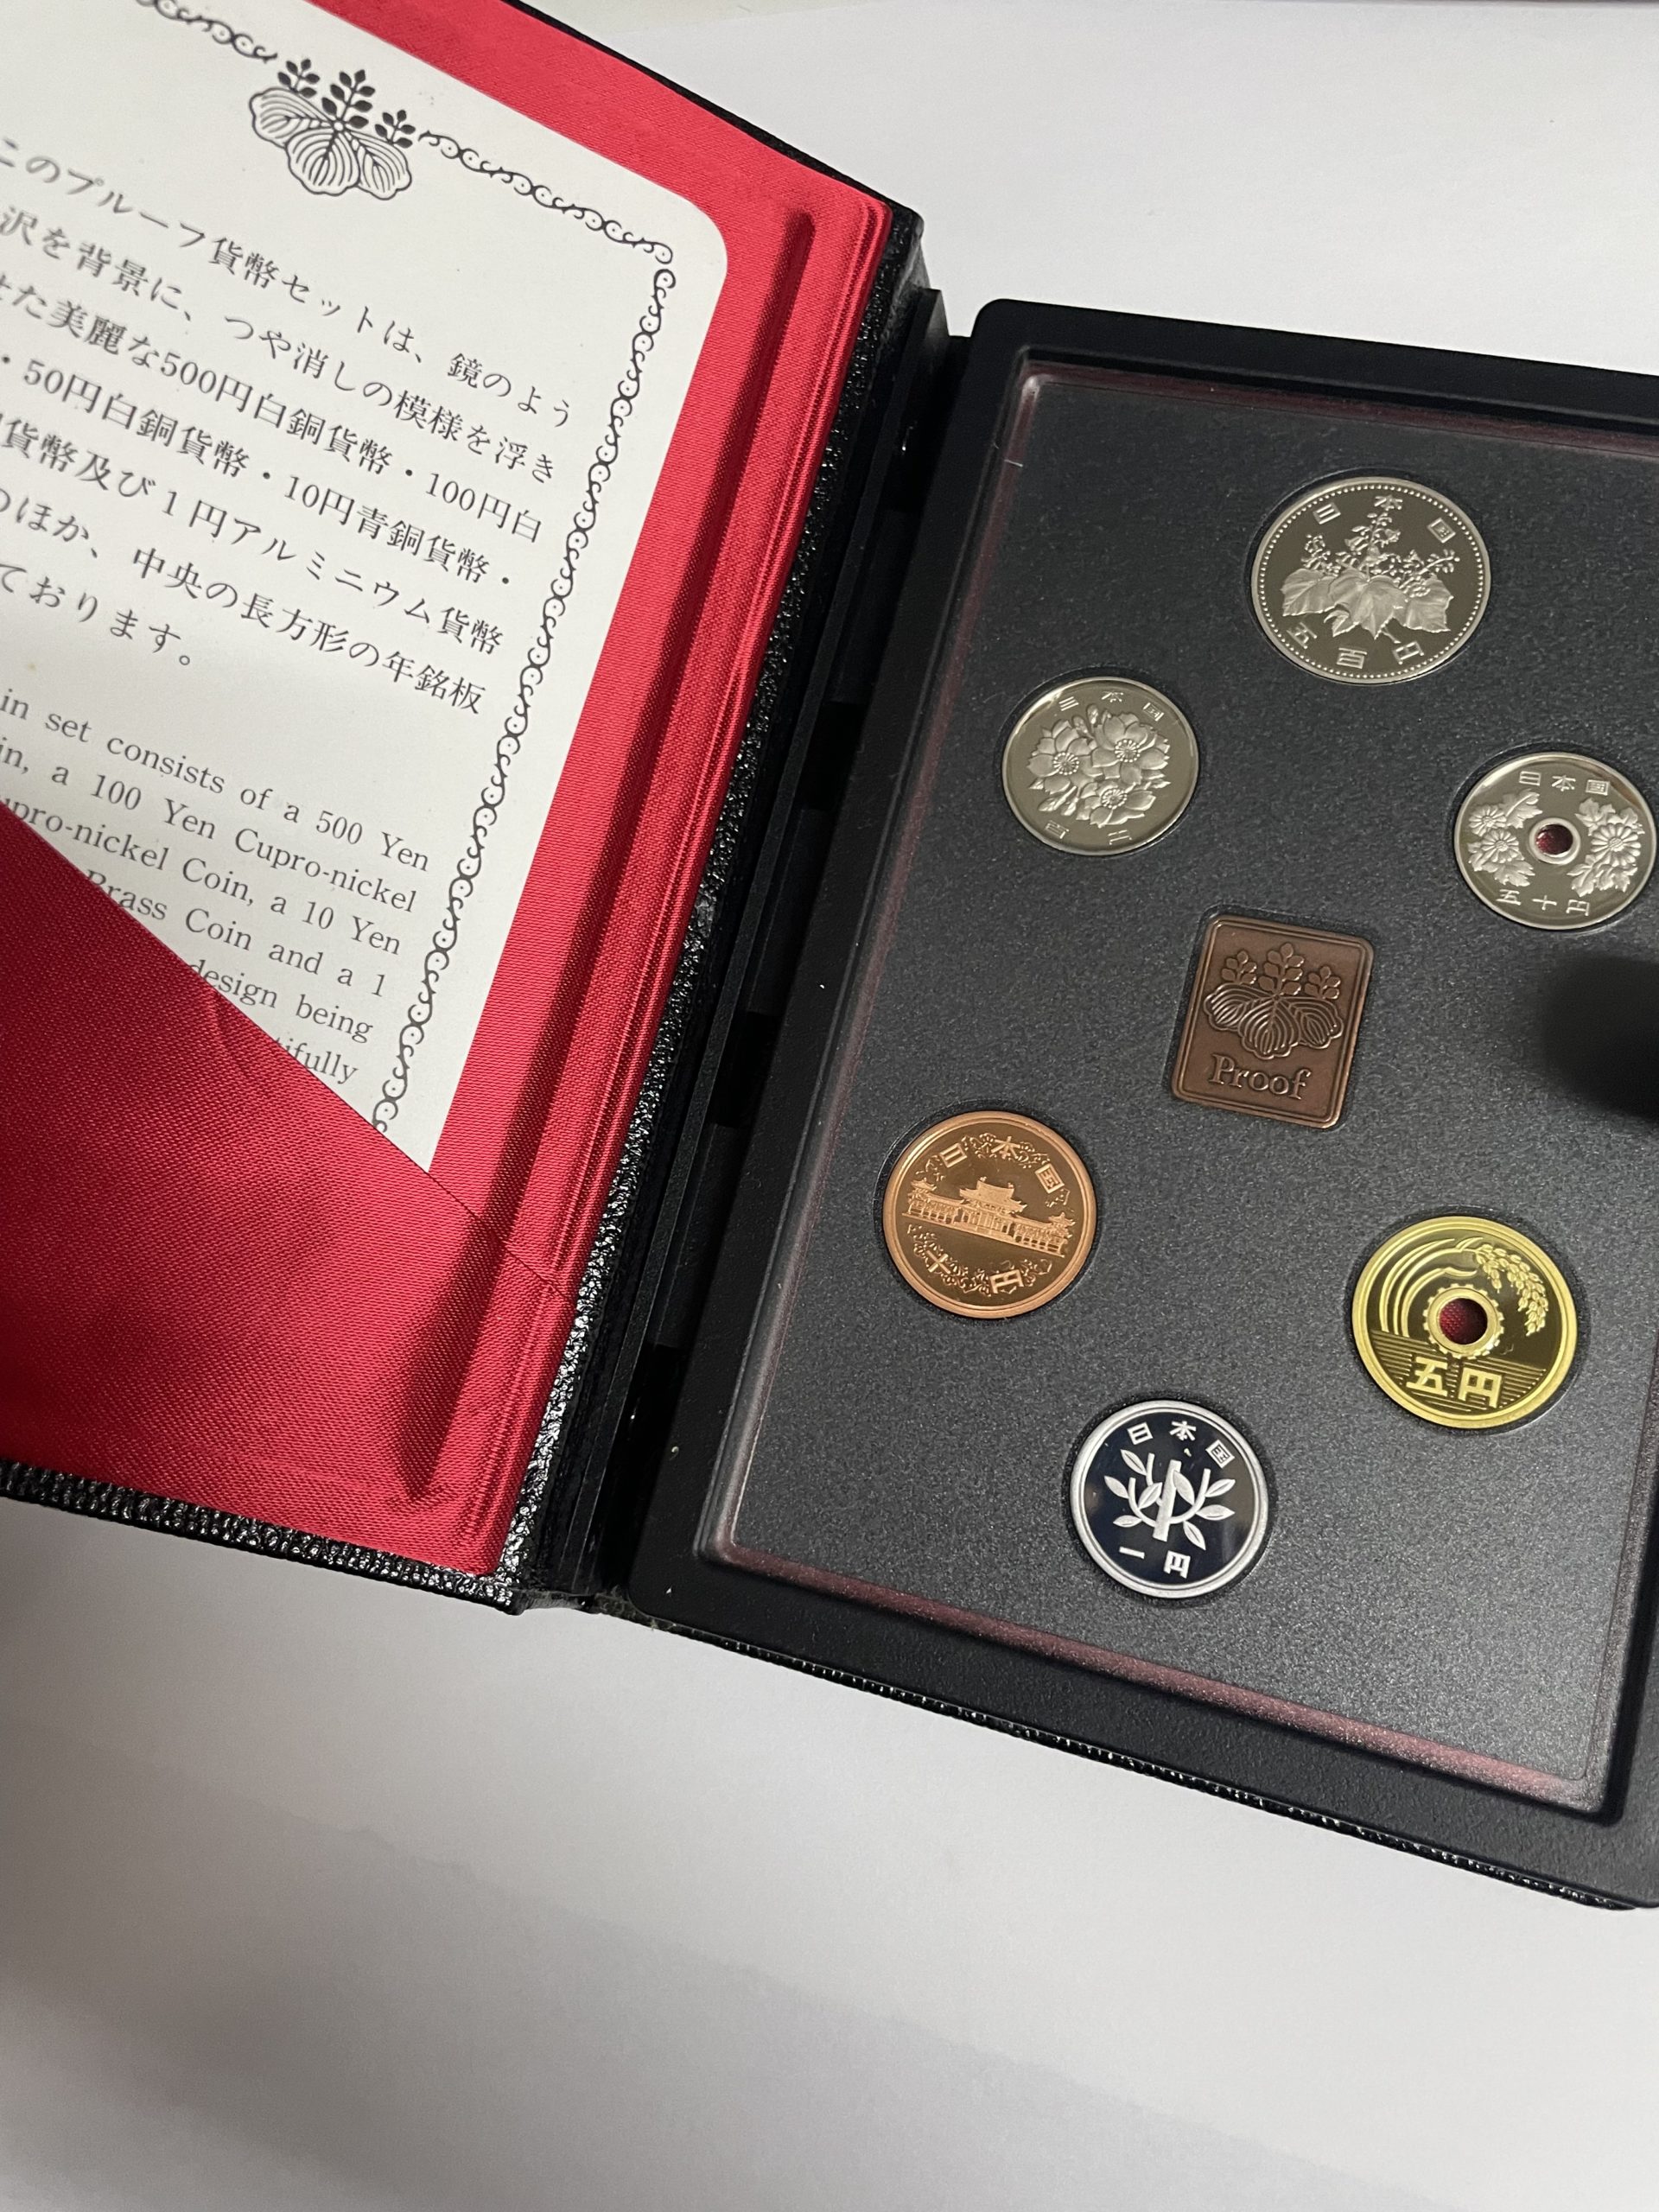 旧貨幣と記念コインのセットコレクション